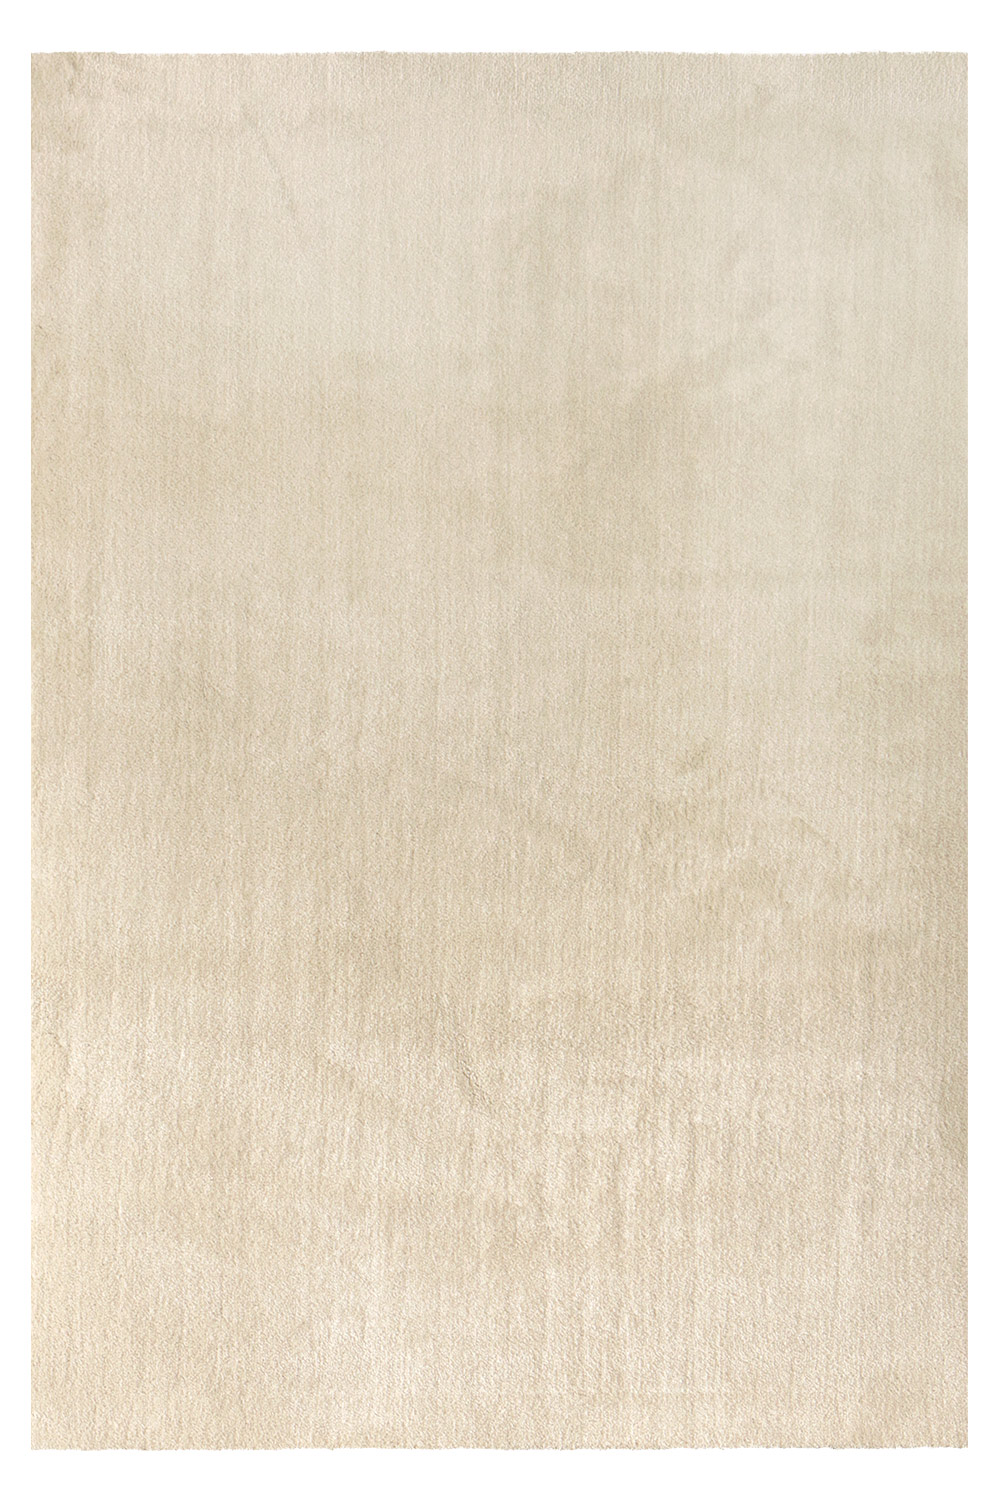 Kusový koberec Labrador 71351 056 Cream 80x150 cm